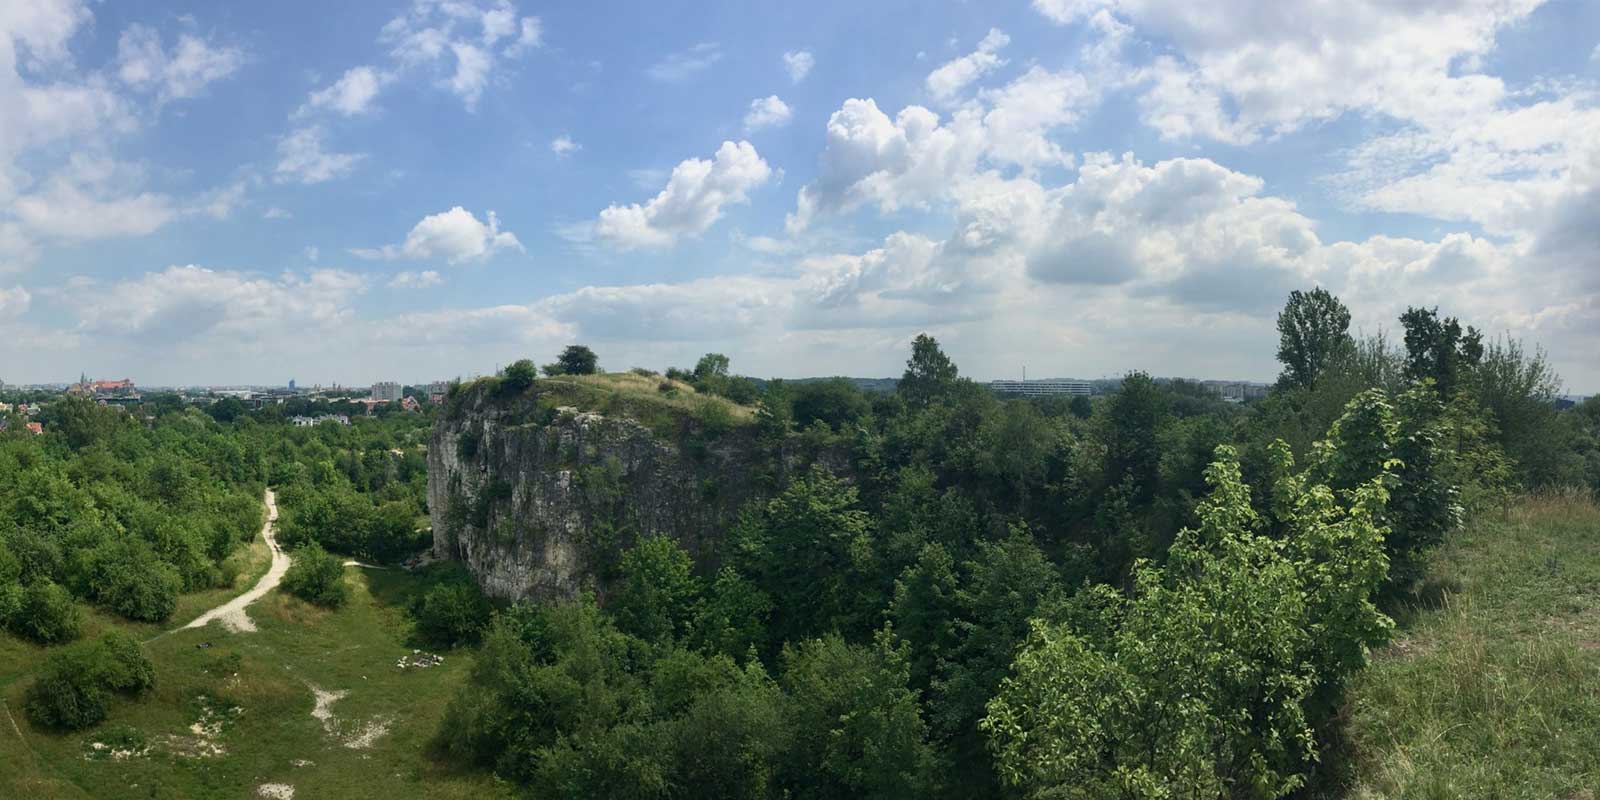 Limestone rocks of Małopolska Upland with Krakow in the background.